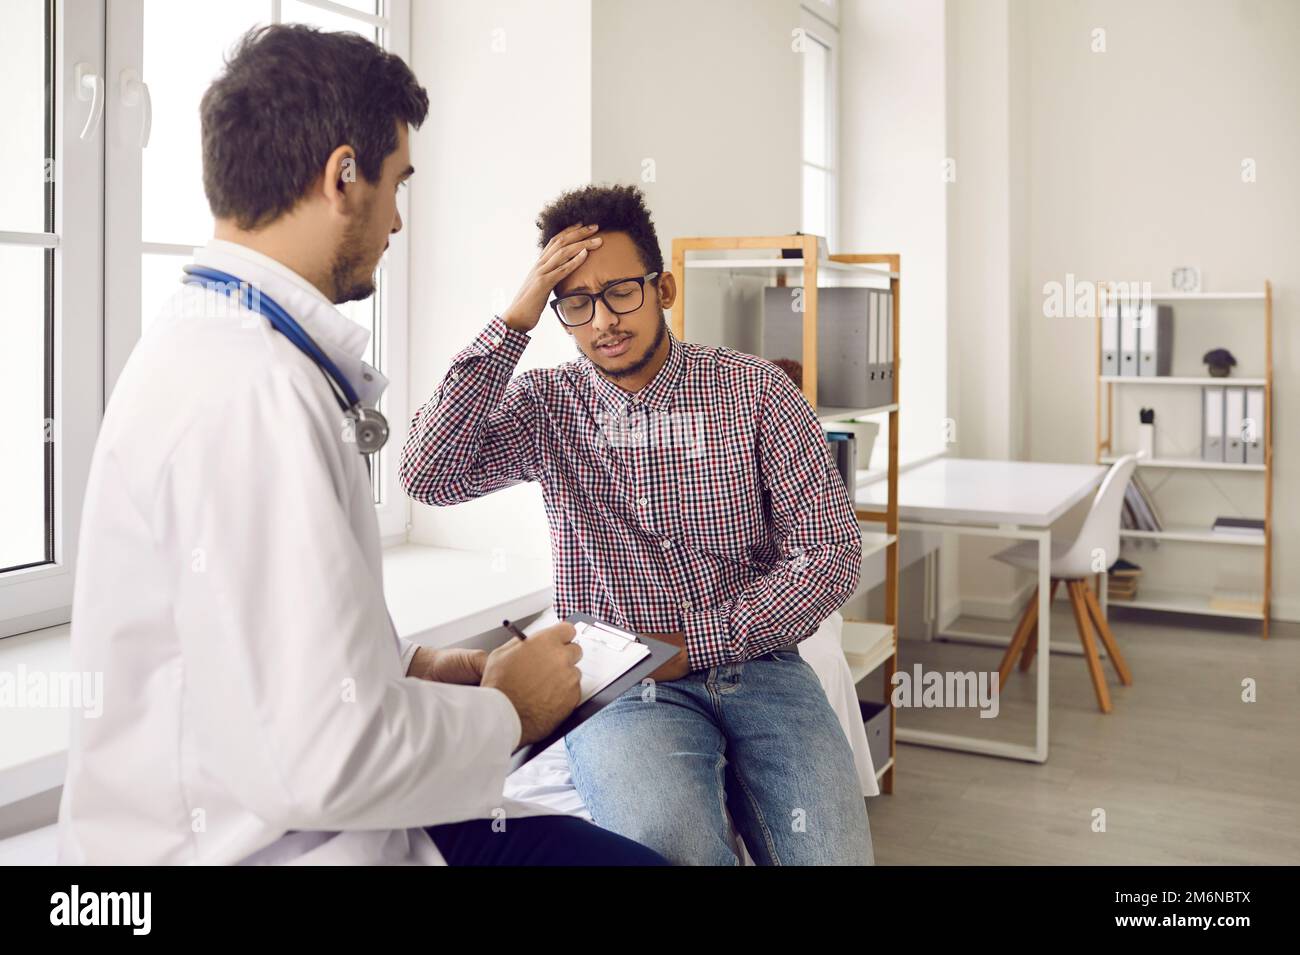 Un jeune homme à peau foncée se plaint de vertiges et de maux de tête pendant un examen médical. Banque D'Images